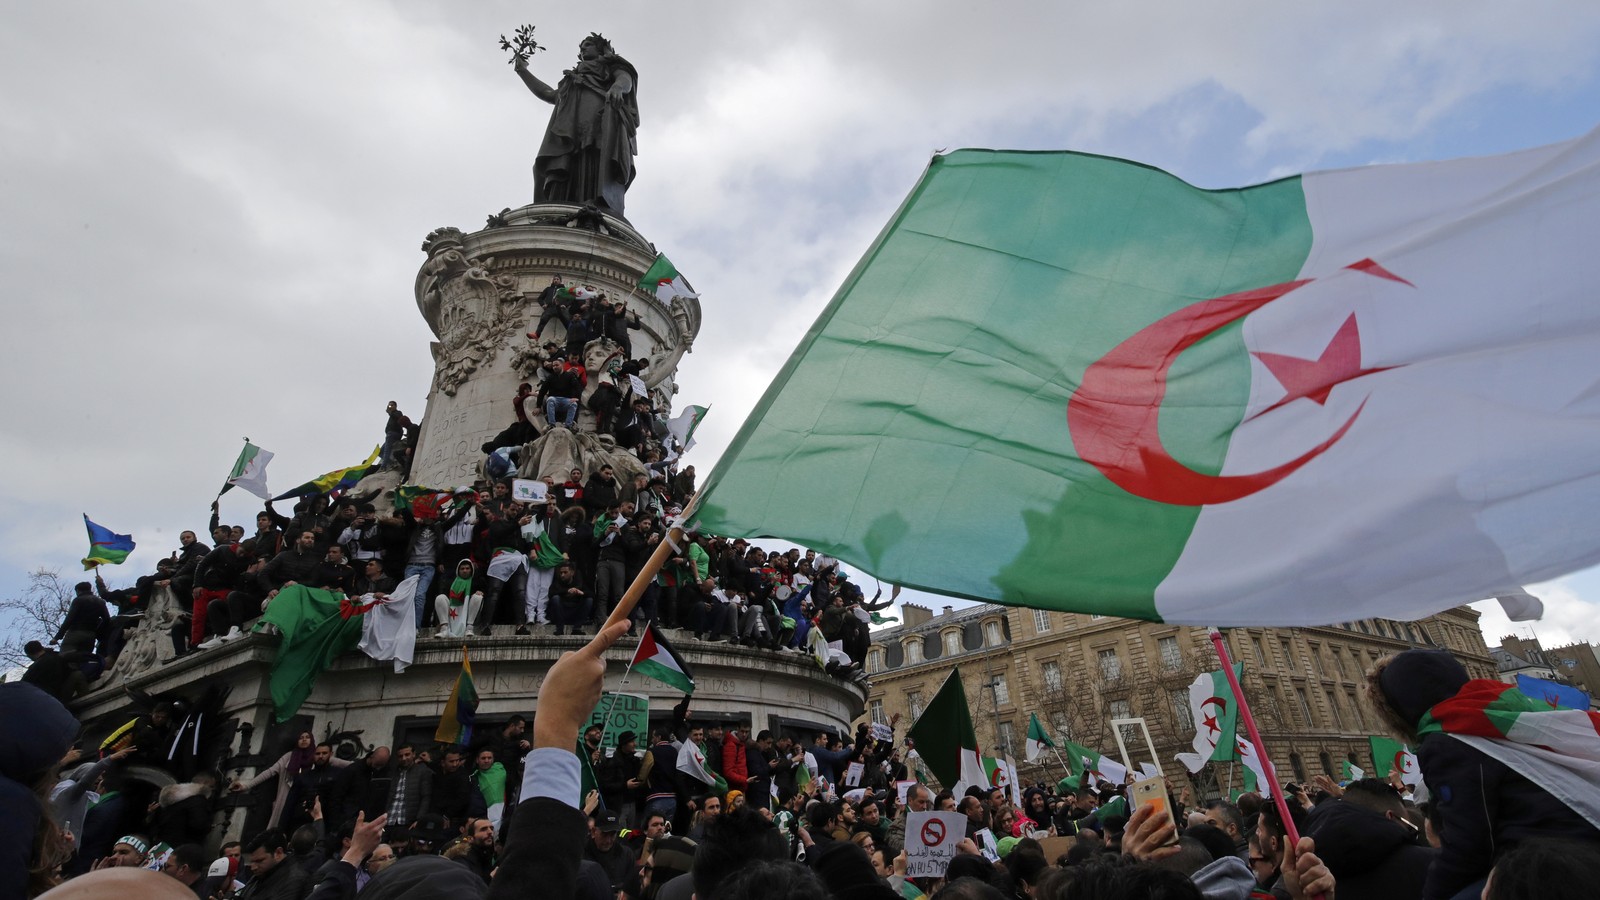 Algeria Flag For Sale  Buy Algeria Flag Online